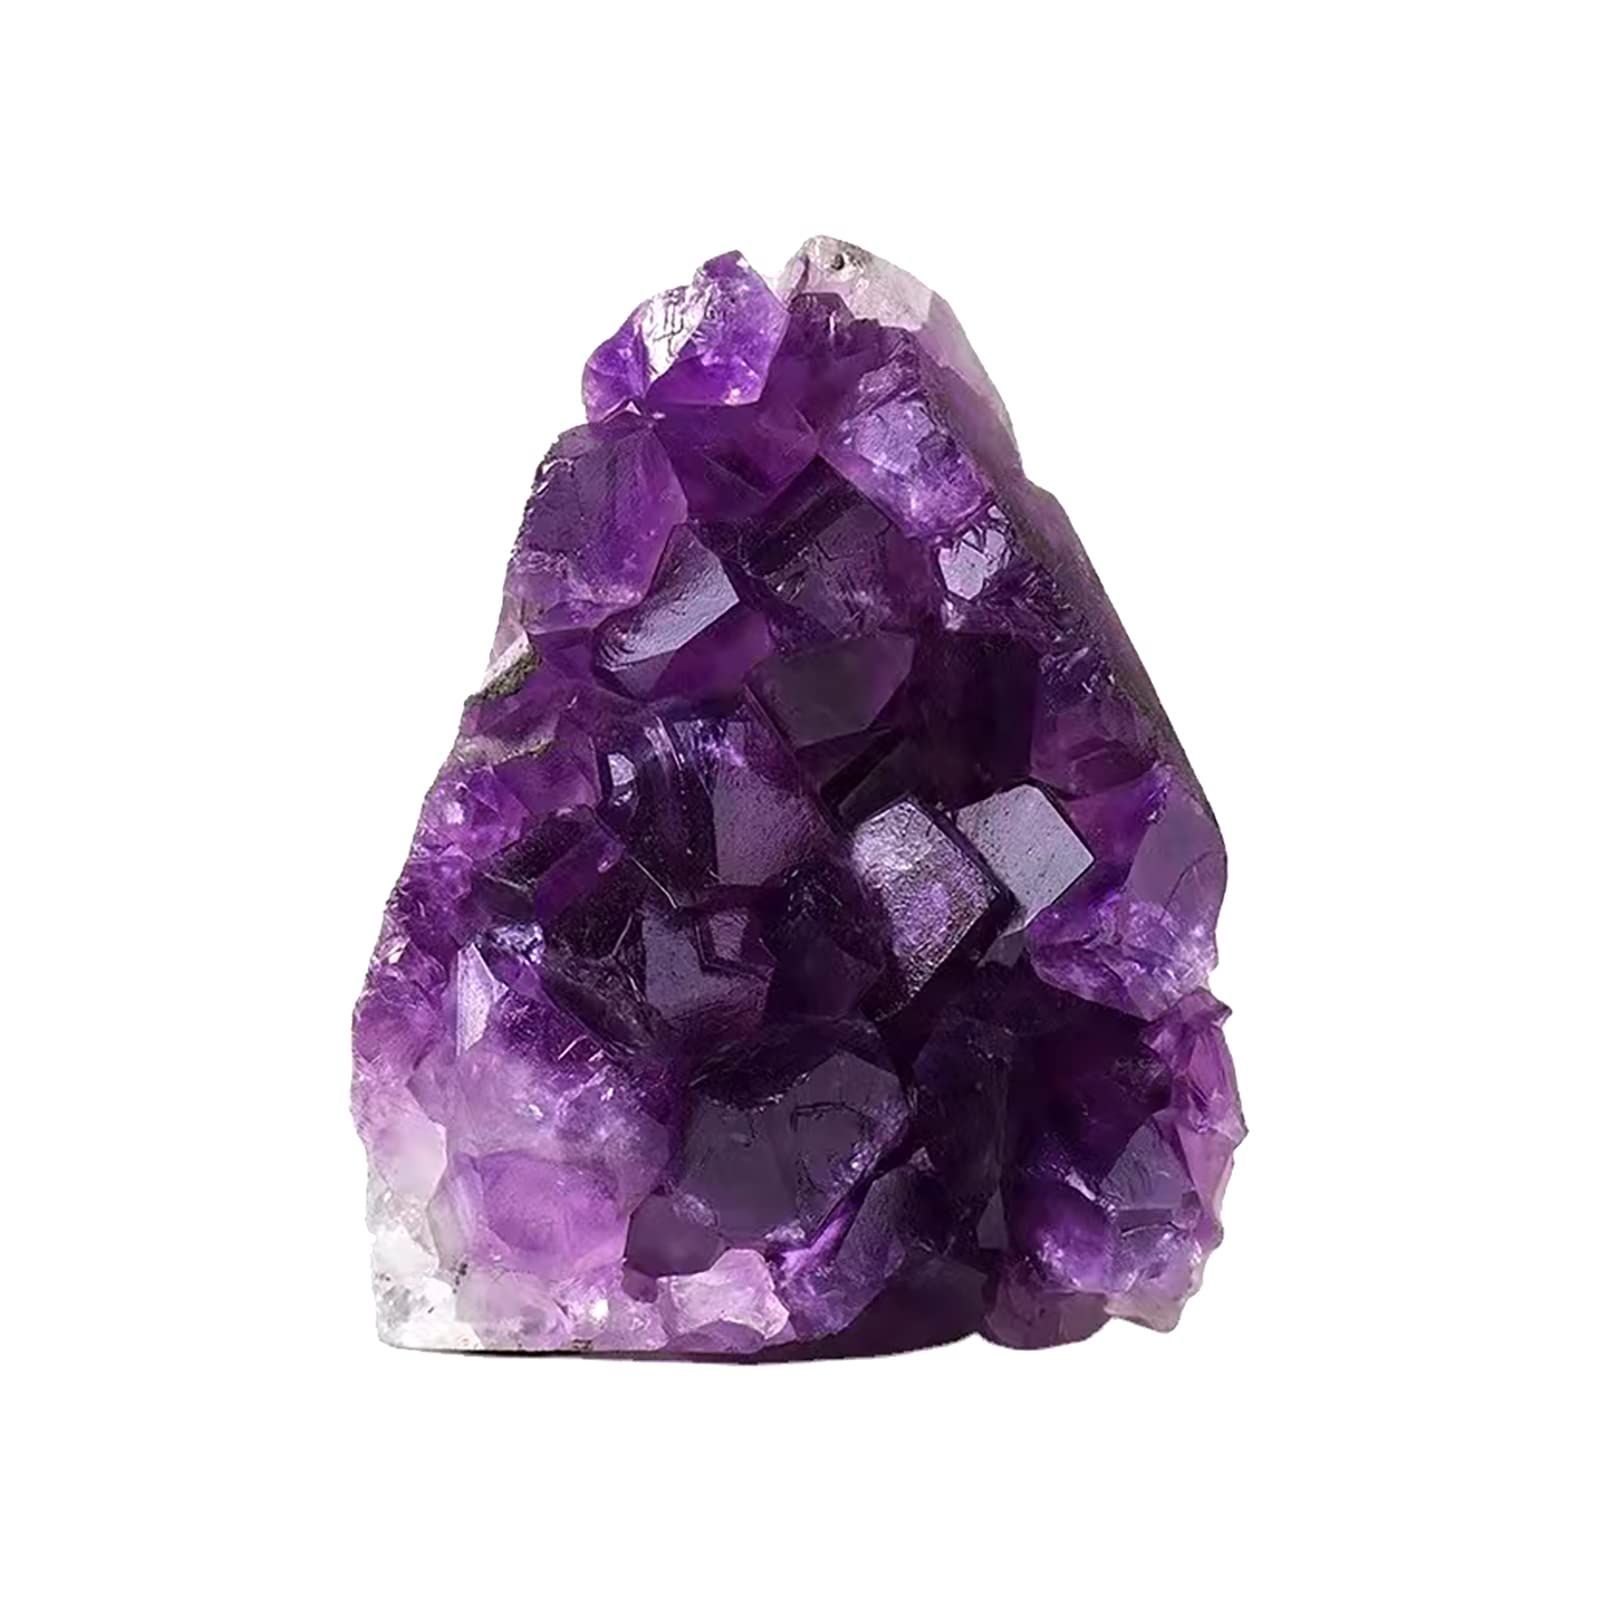 完全天然石 アメジスト原石 34-39mm 紫水晶 美しい紫色を帯びた水晶